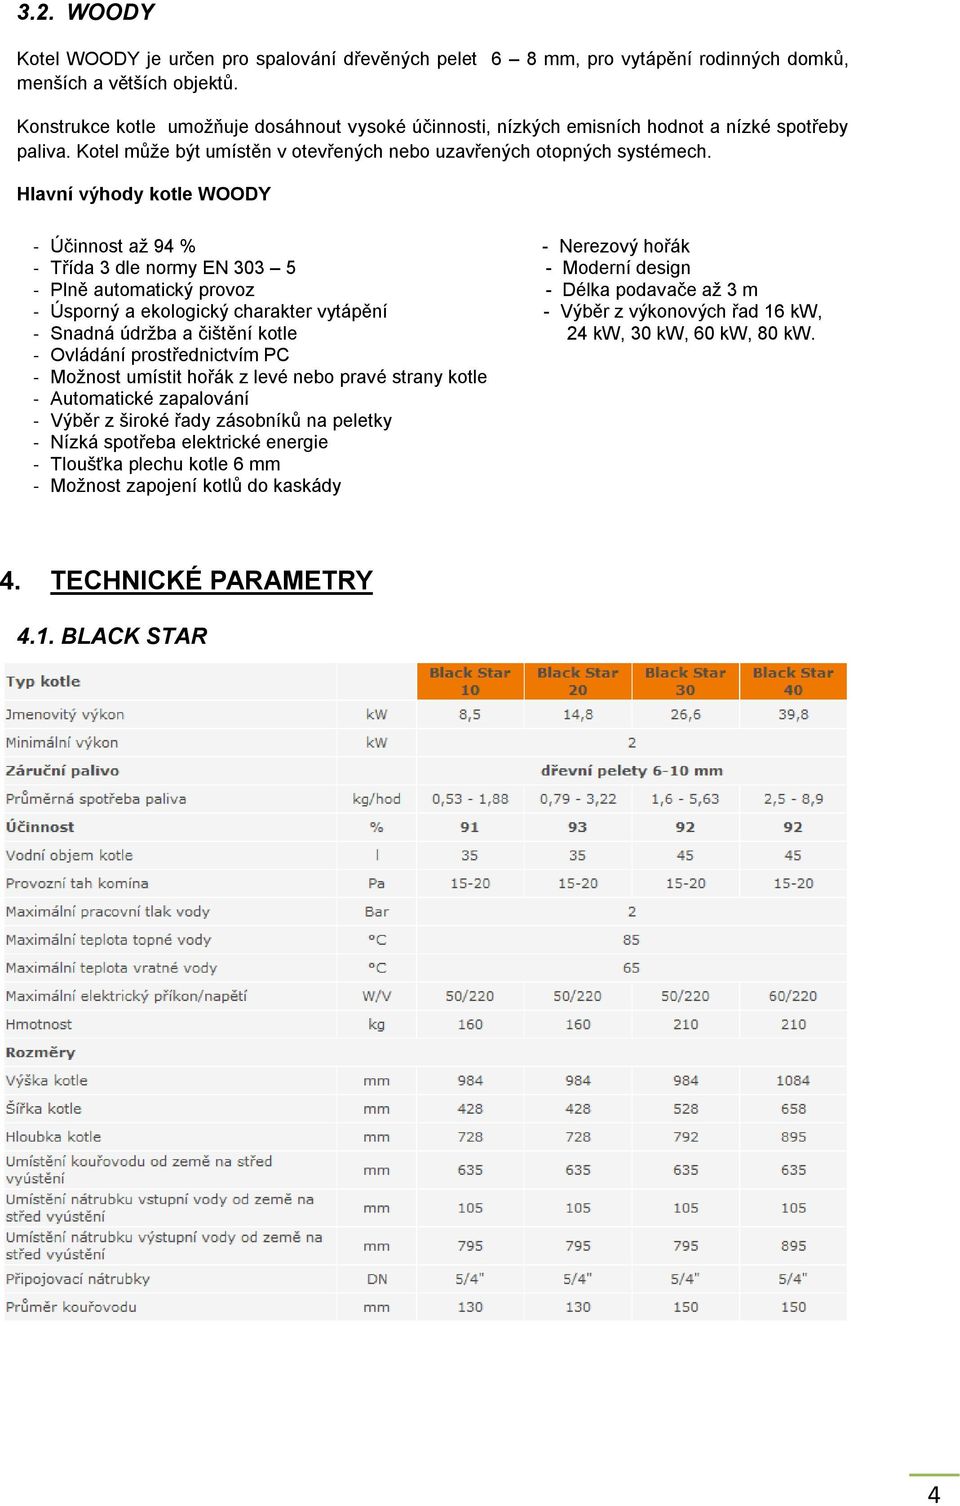 Hlavní výhody kotle WOODY - Účinnost až 94 % - Nerezový hořák - Třída 3 dle normy EN 303 5 - Moderní design - Plně automatický provoz - Délka podavače až 3 m - Úsporný a ekologický charakter vytápění